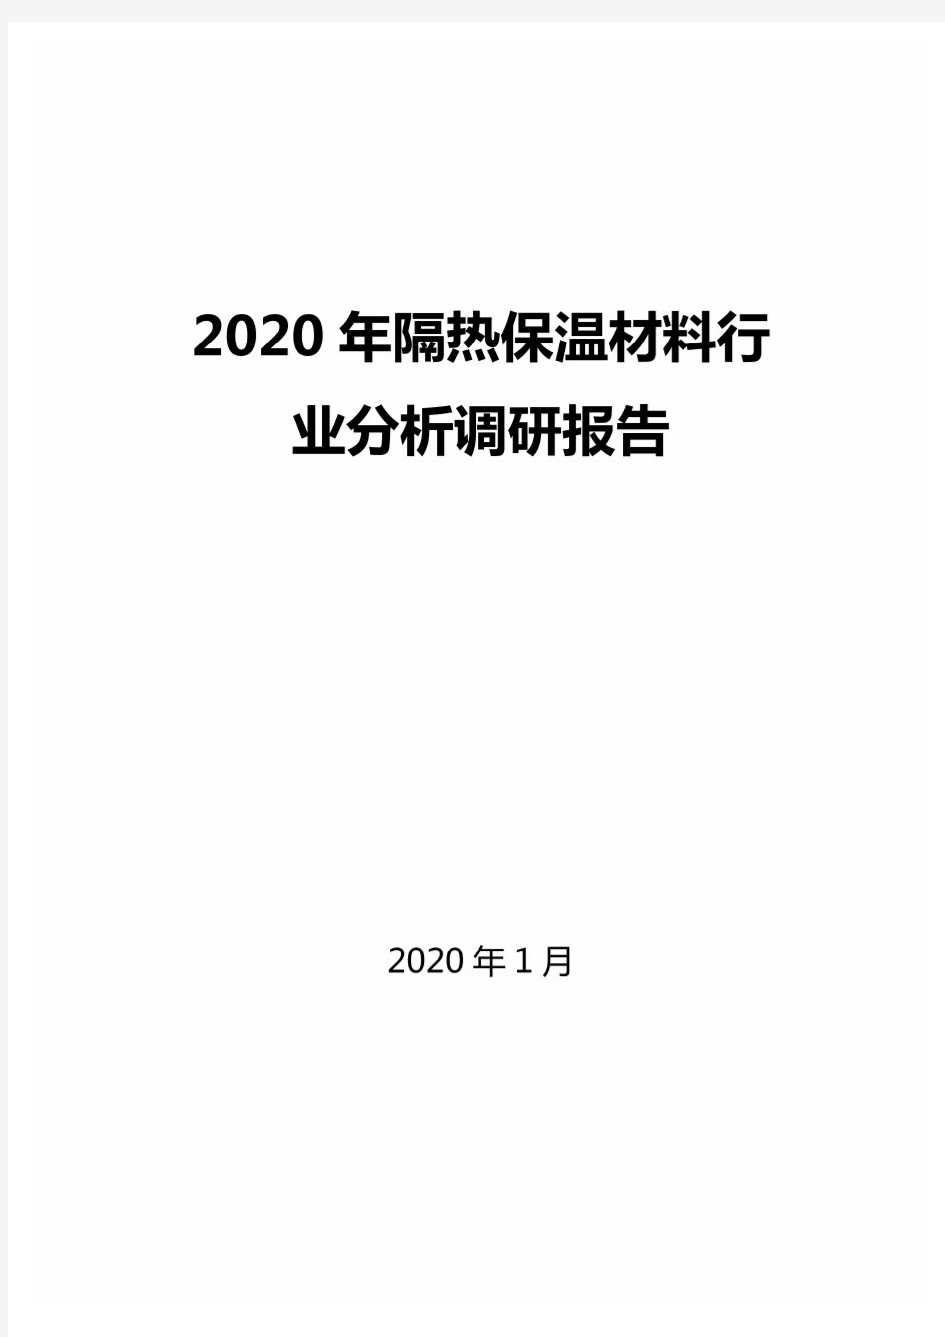 2020年隔热保温材料行业分析调研报告